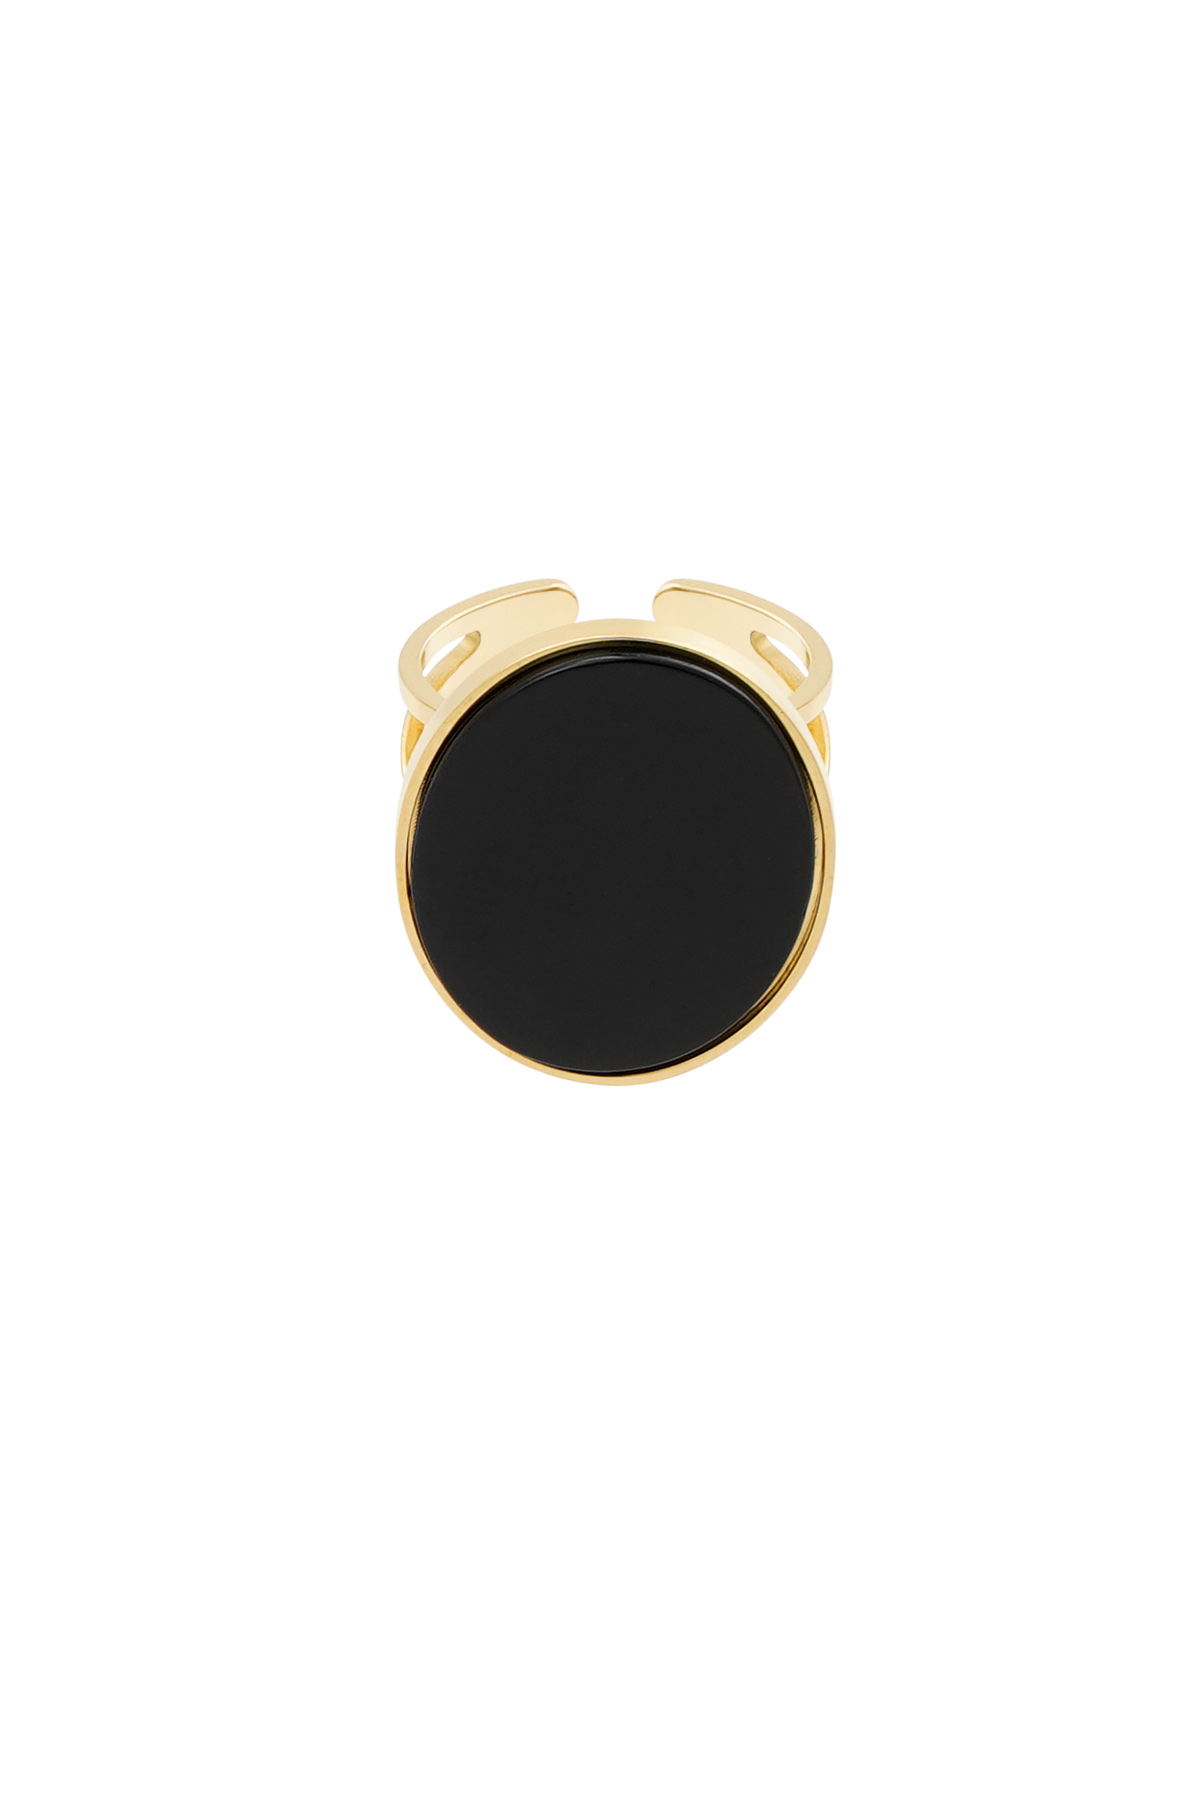 Ring grote steen - goud/zwart h5 